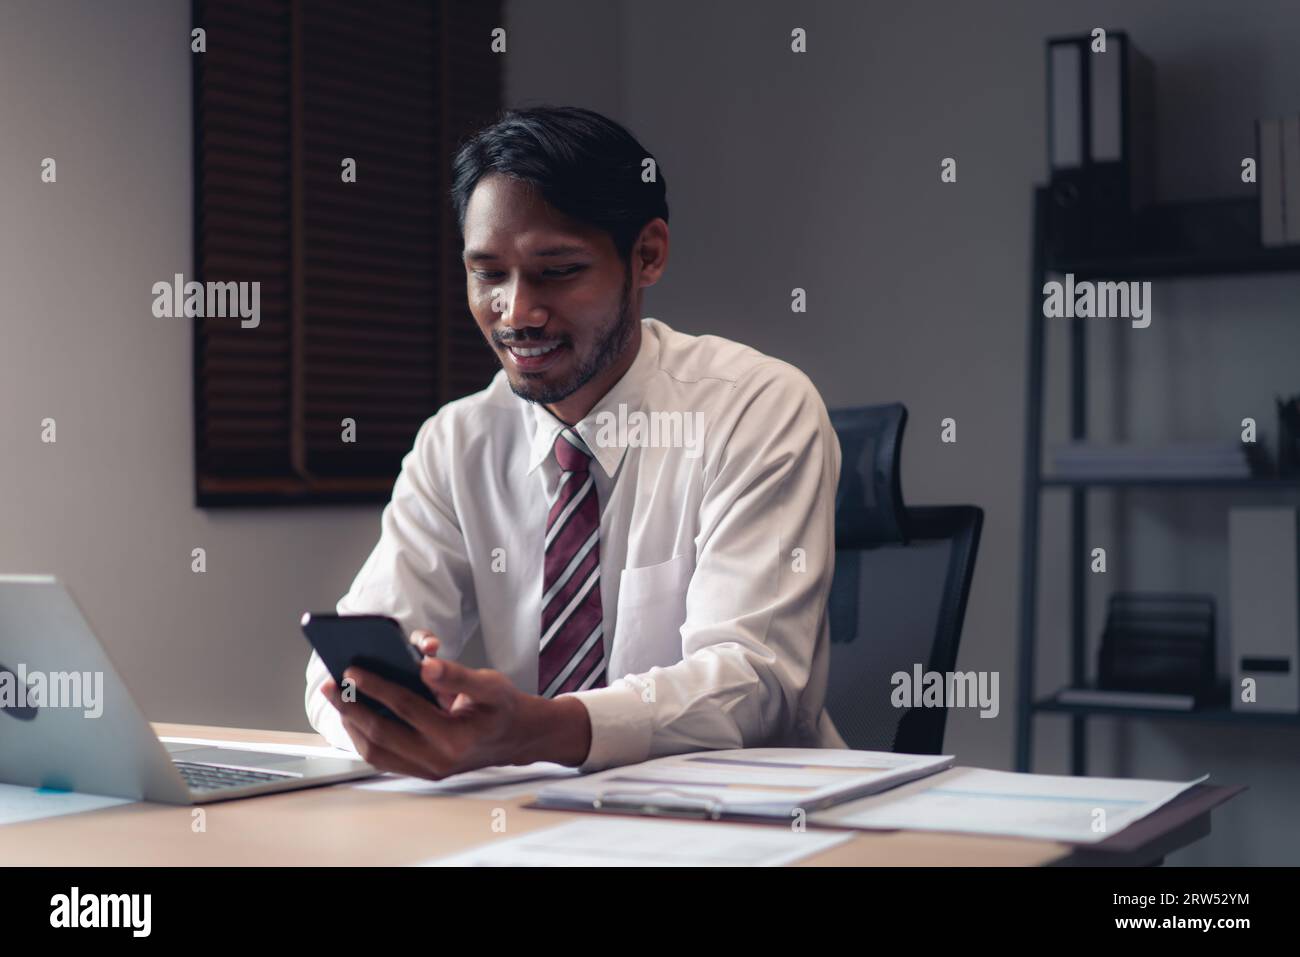 Homme d'affaires utilisant smartphone pour vérifier le rapport tout en analysant les finances et la comptabilité du projet. Banque D'Images